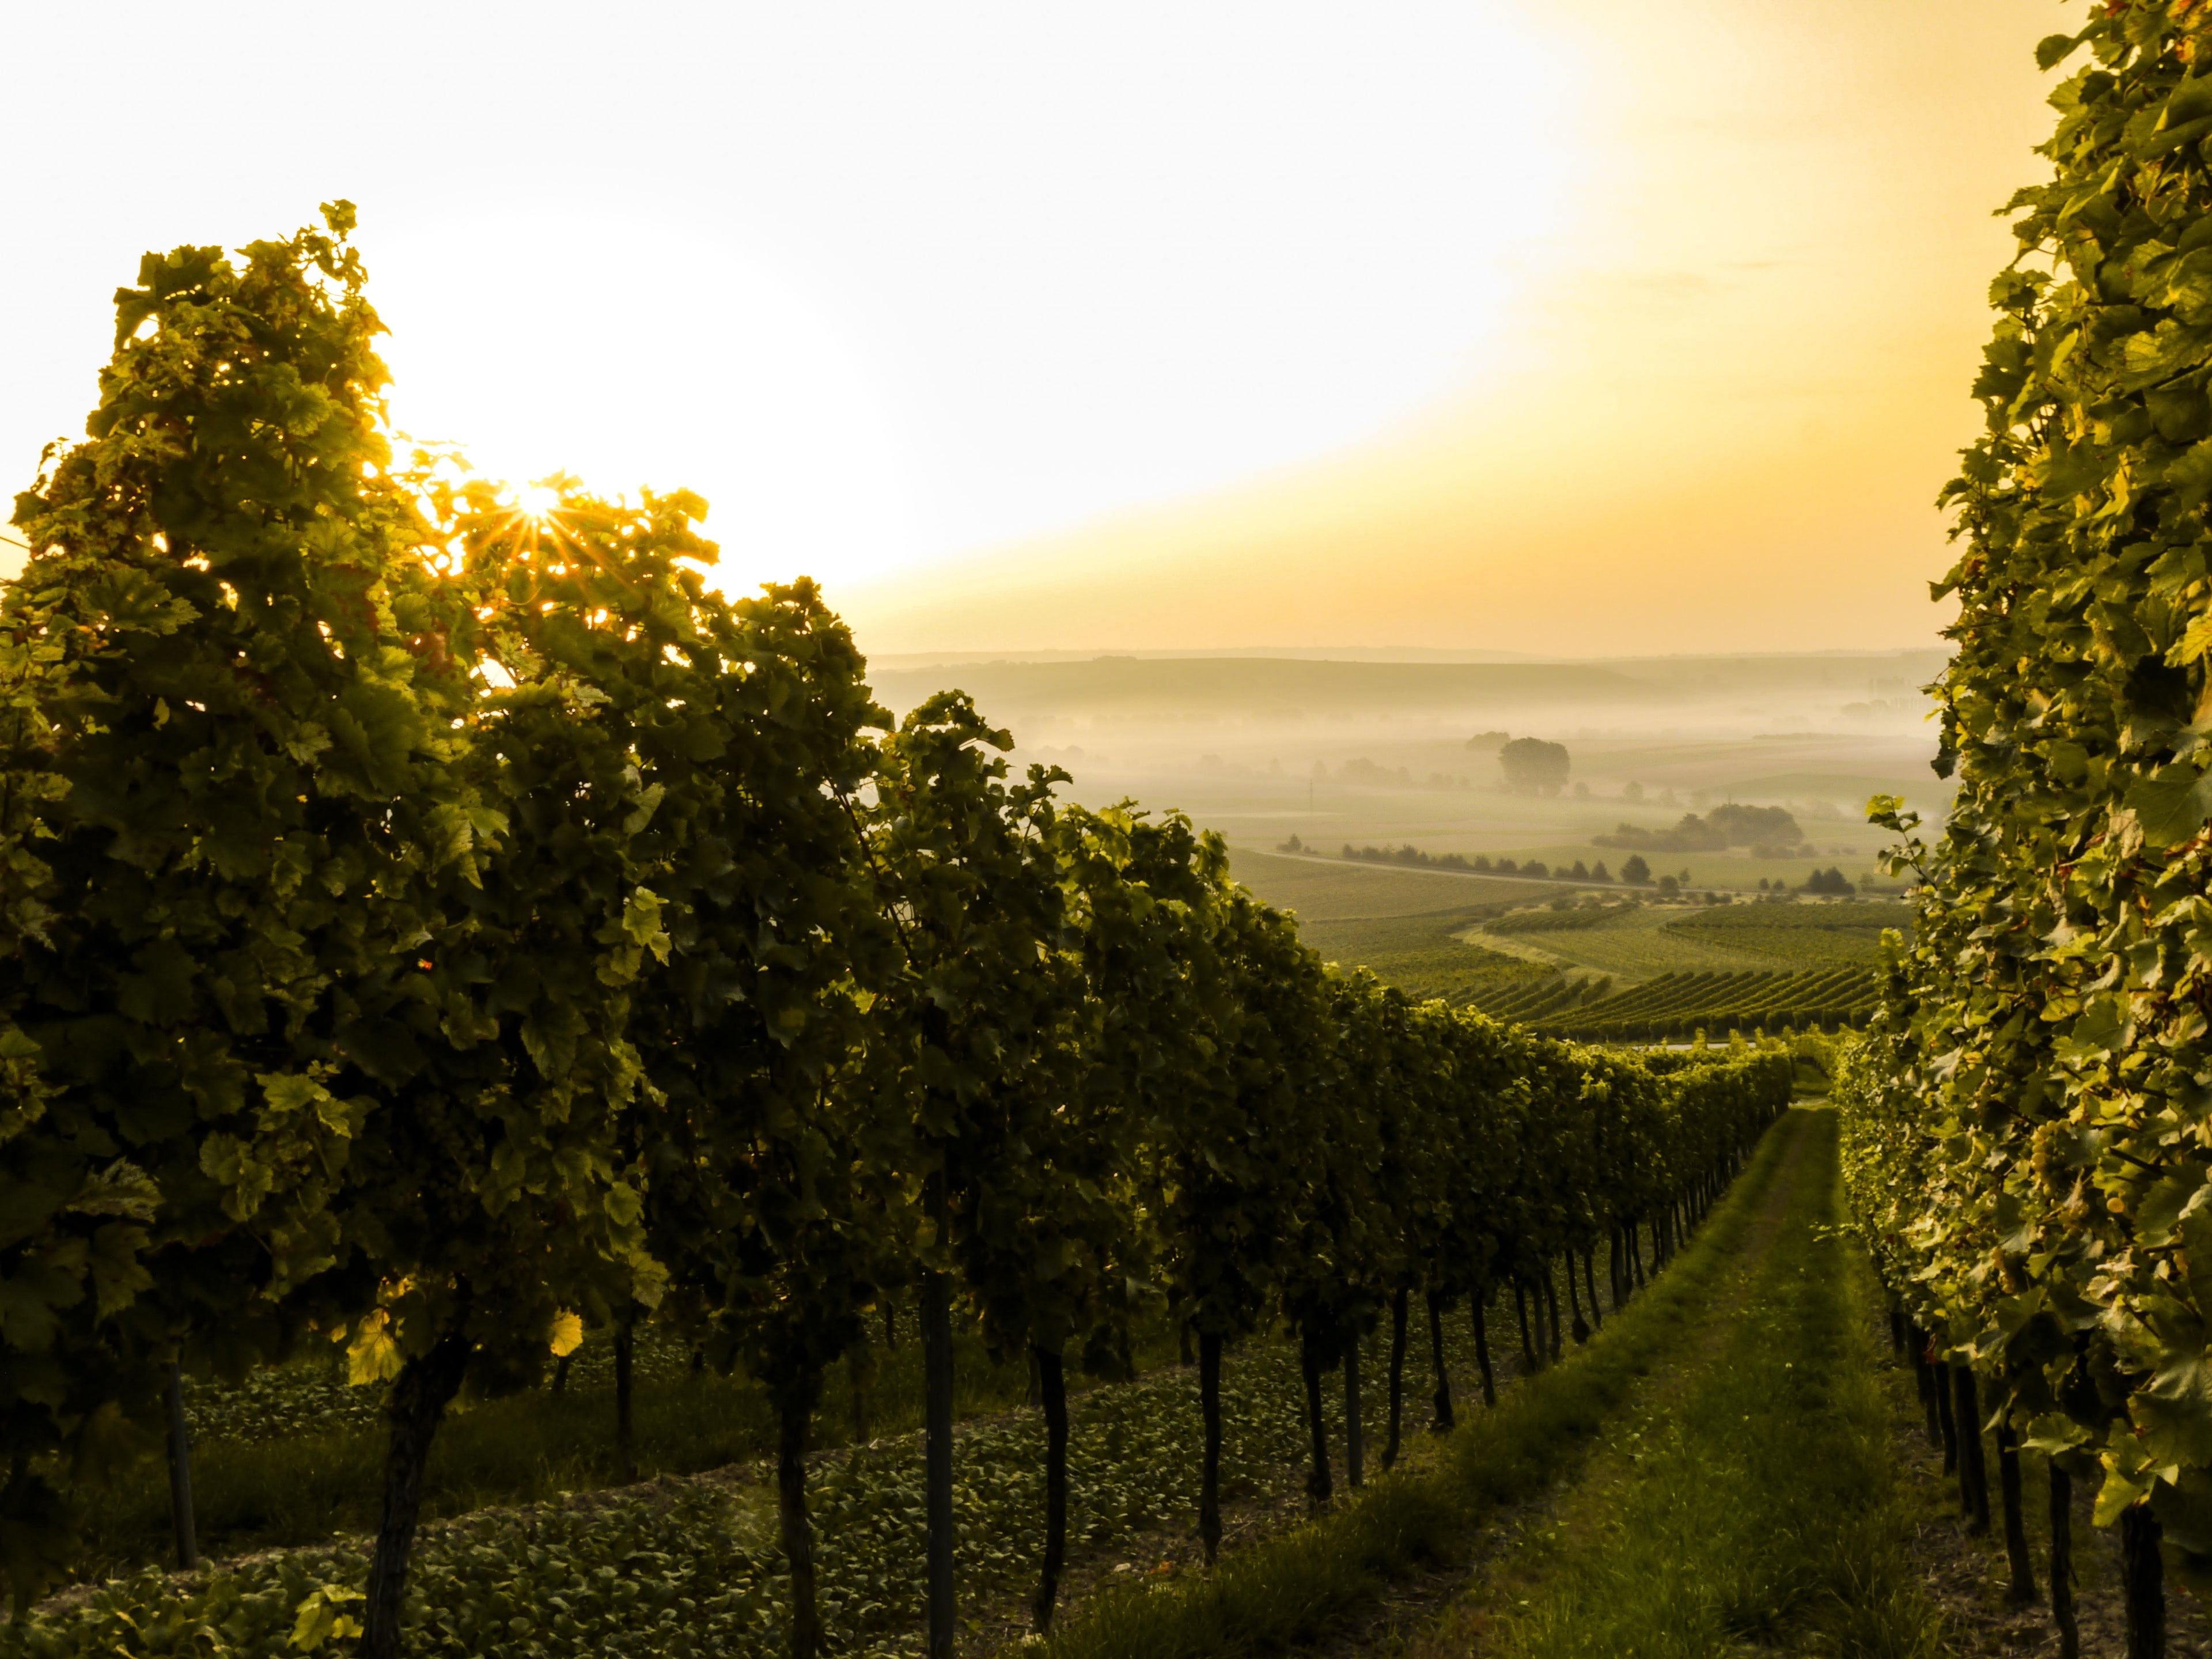 Weine aus Deutschland's schönsten Anbauregionen